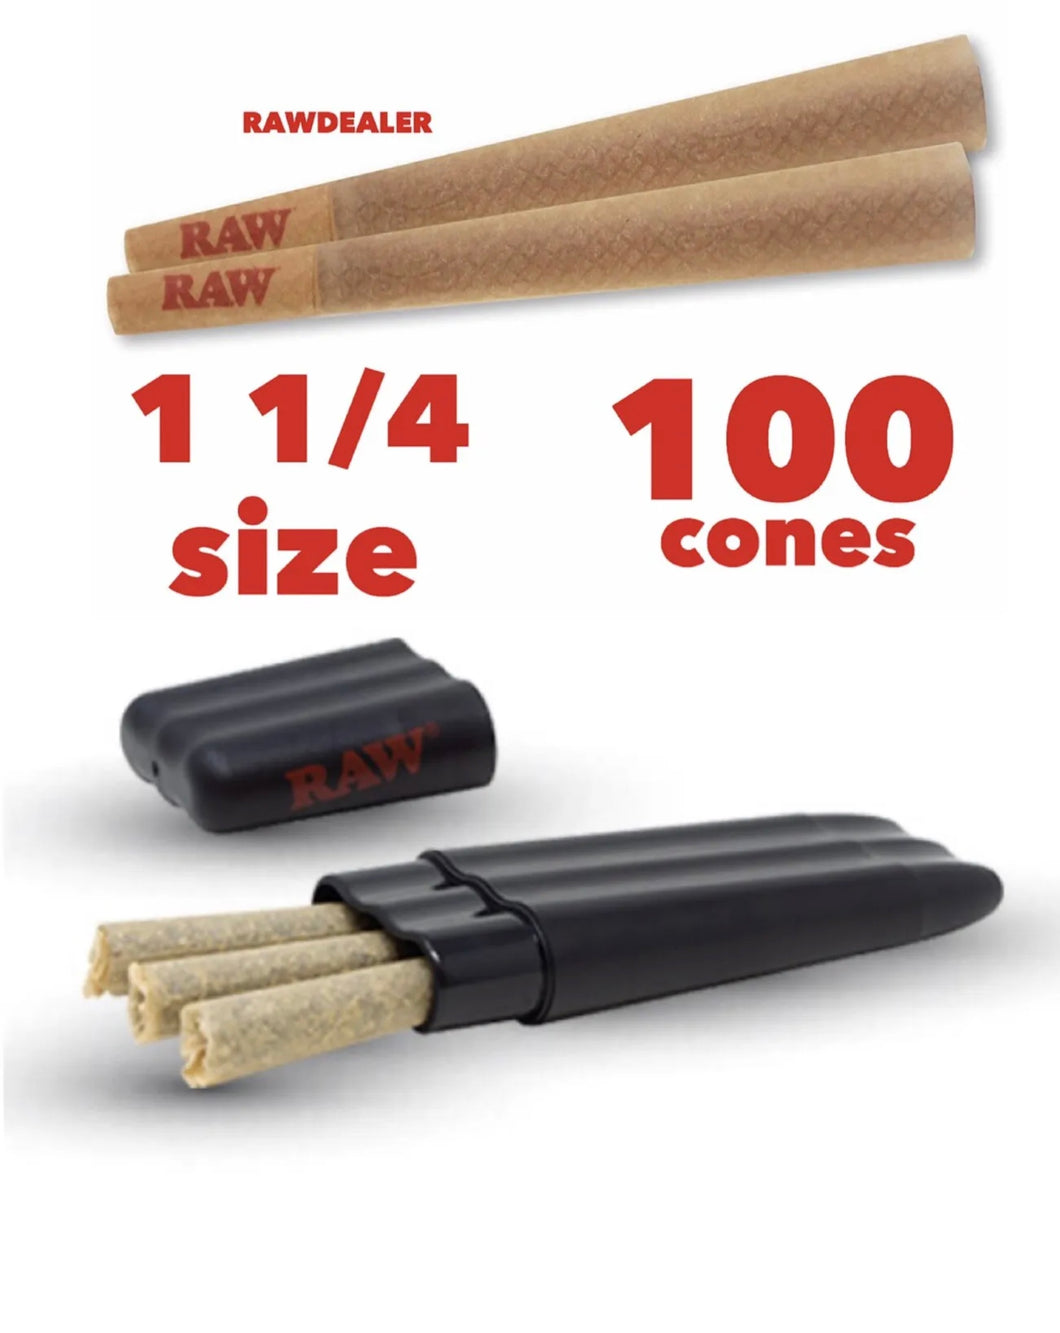 raw cone classic 1 1/4 size pre rolled cone(100pk, 50pk) +RAW three tree cone case